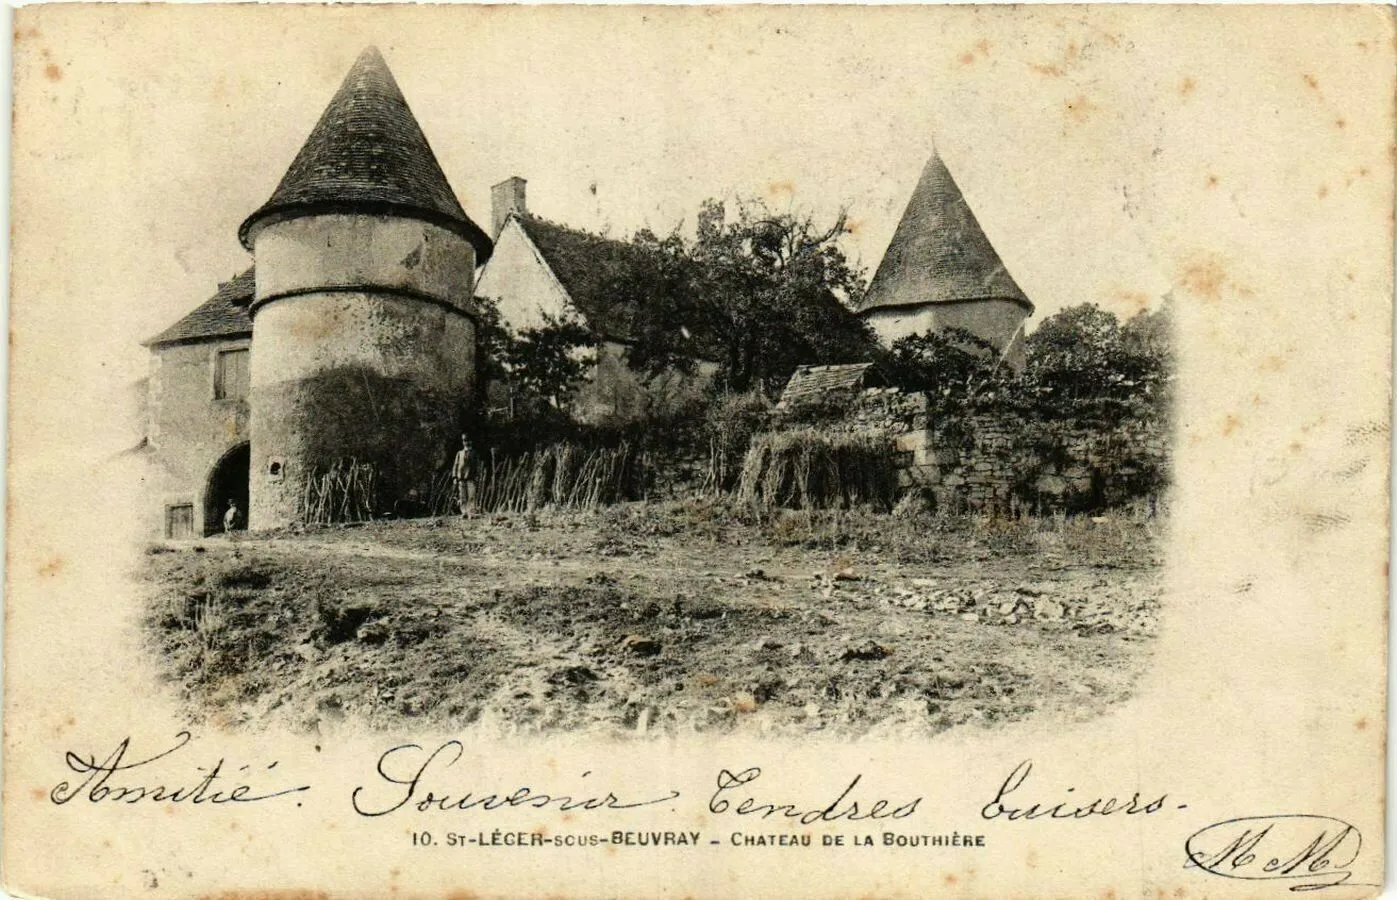 Photo showing: La ferme du Château de la Bouthière de Saint-Léger-sous-Beuvray Saône-et-Loire